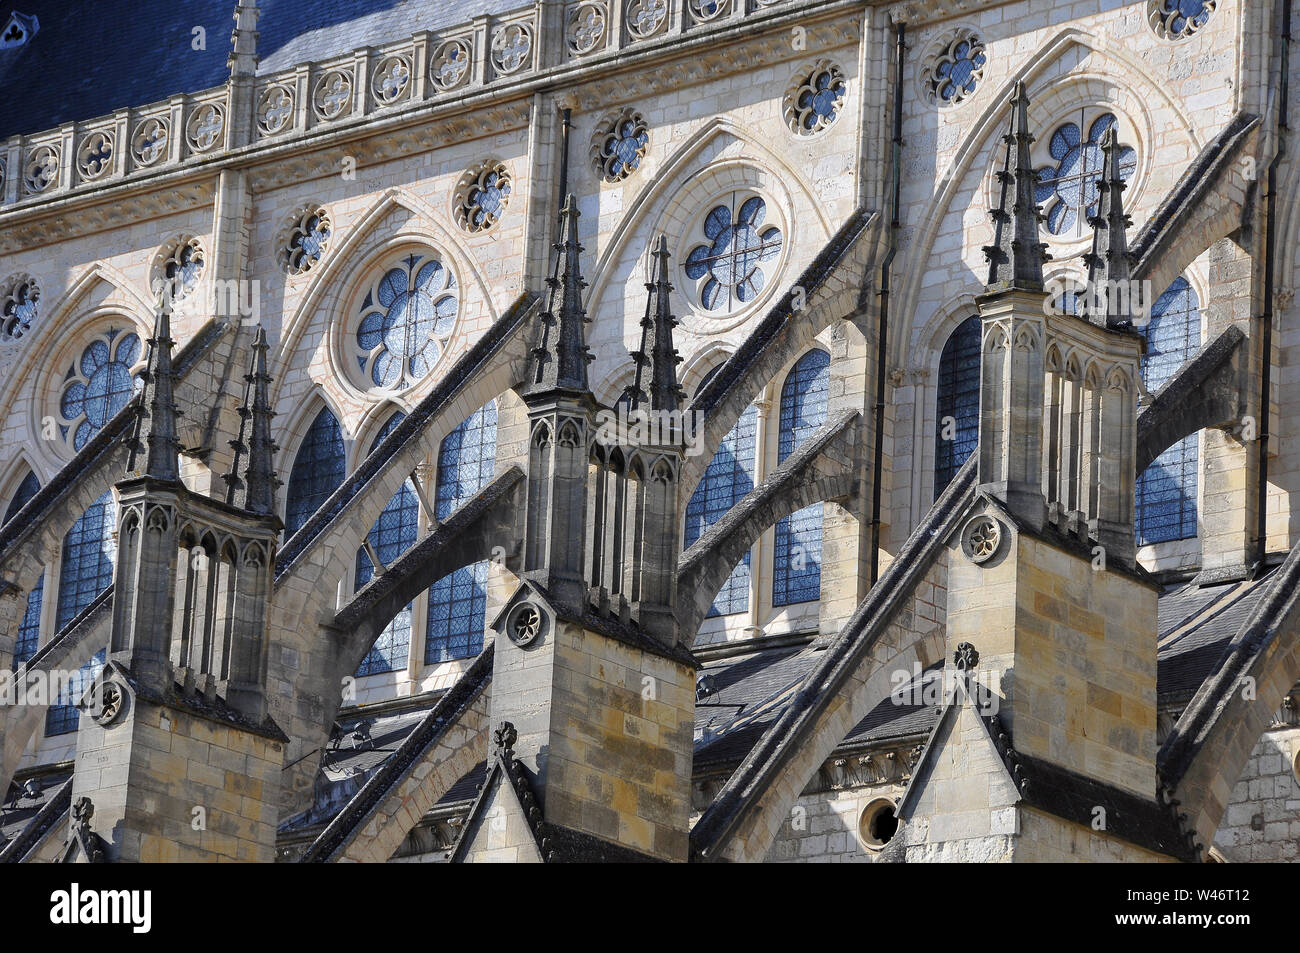 La cattedrale di Bourges, Cathédrale Saint-Étienne de Bourges, Bourges, Francia, Europa, patrimonio mondiale dell UNESCO Foto Stock